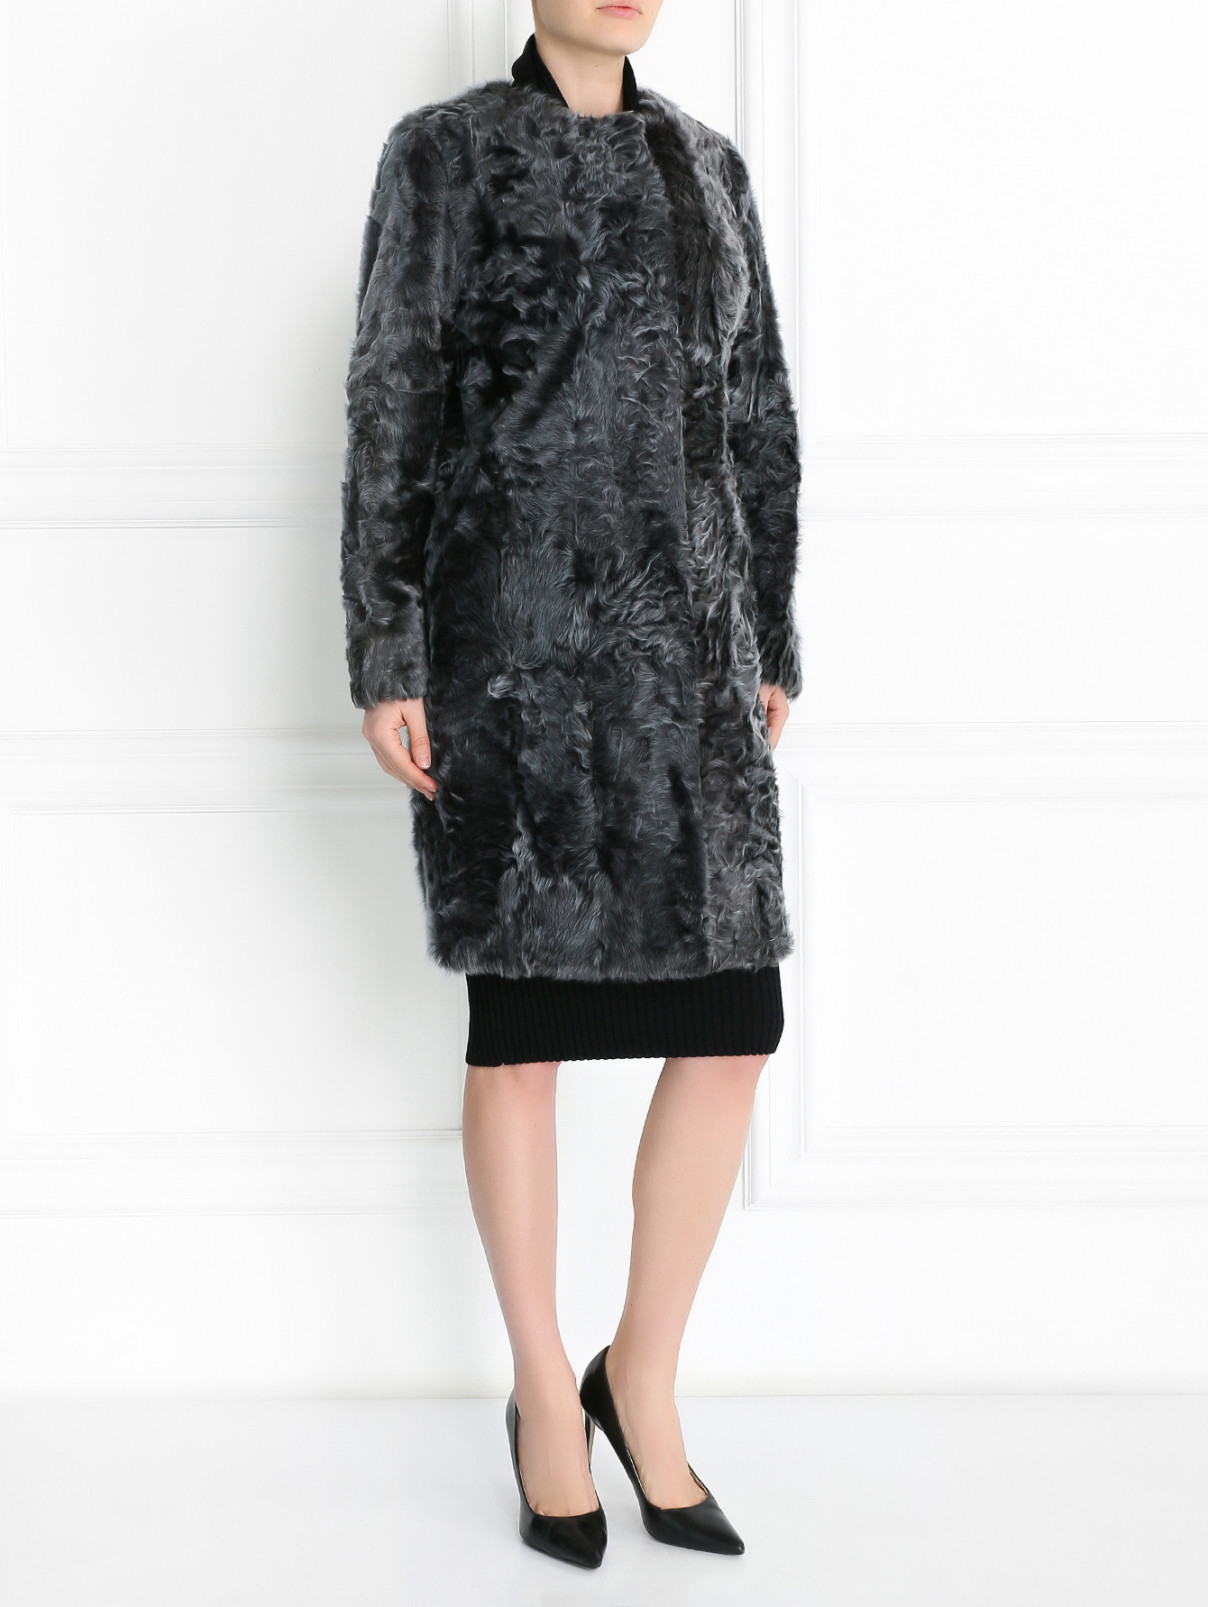 Пальто из кожи ягненка с отделкой из меха Fabio Gavazzi  –  Модель Общий вид  – Цвет:  Серый